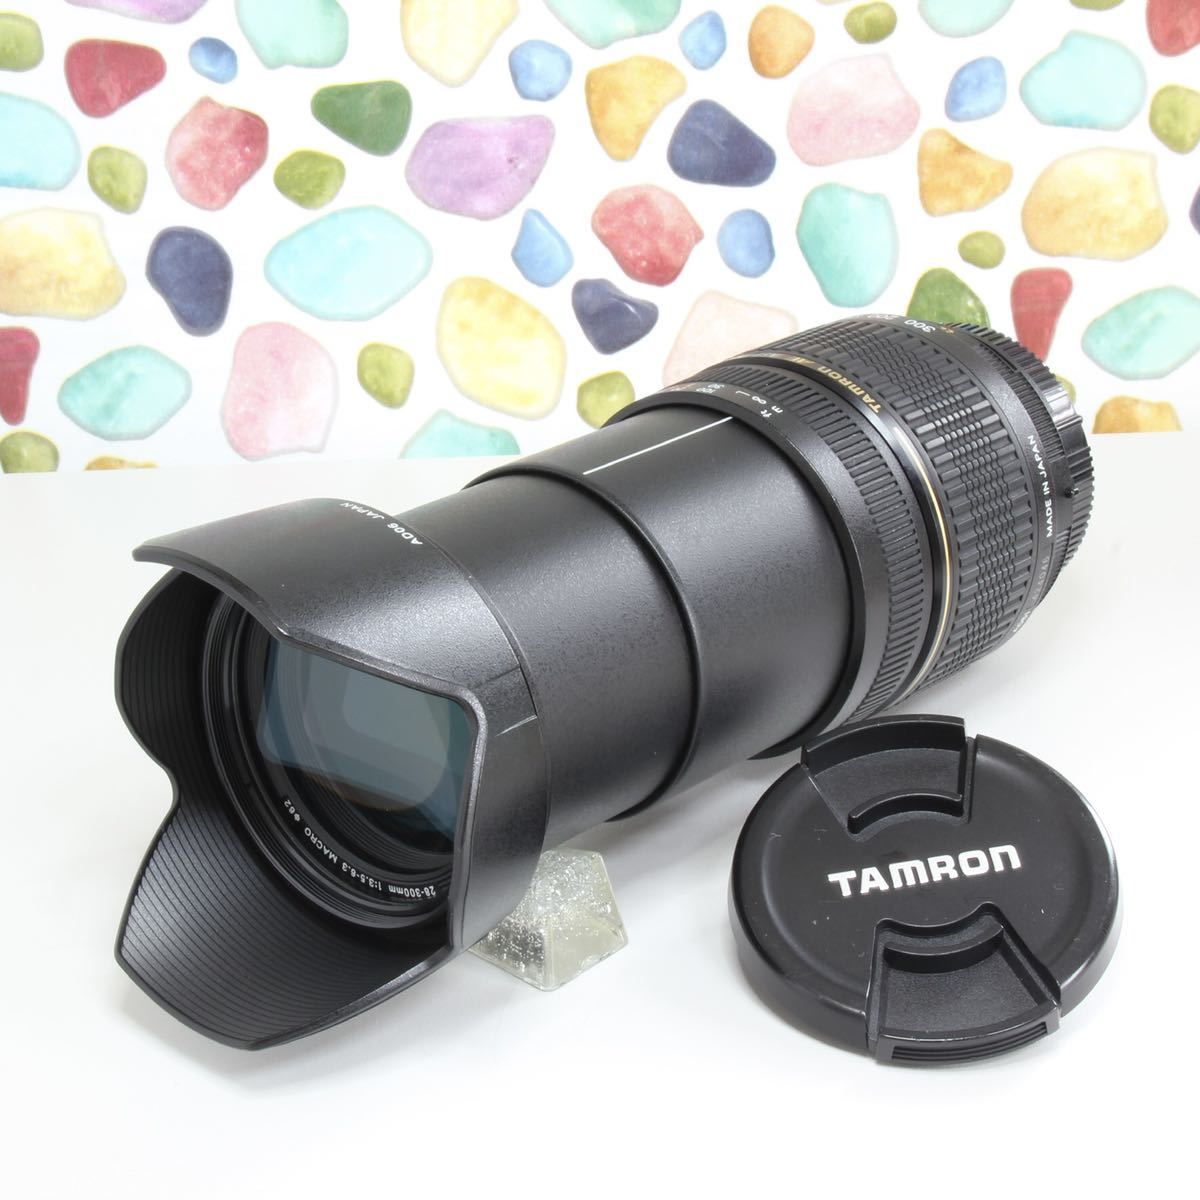 ◇広角から望遠まで ◇TAMRON タムロン 28-300mm ニコン用 Nikon-